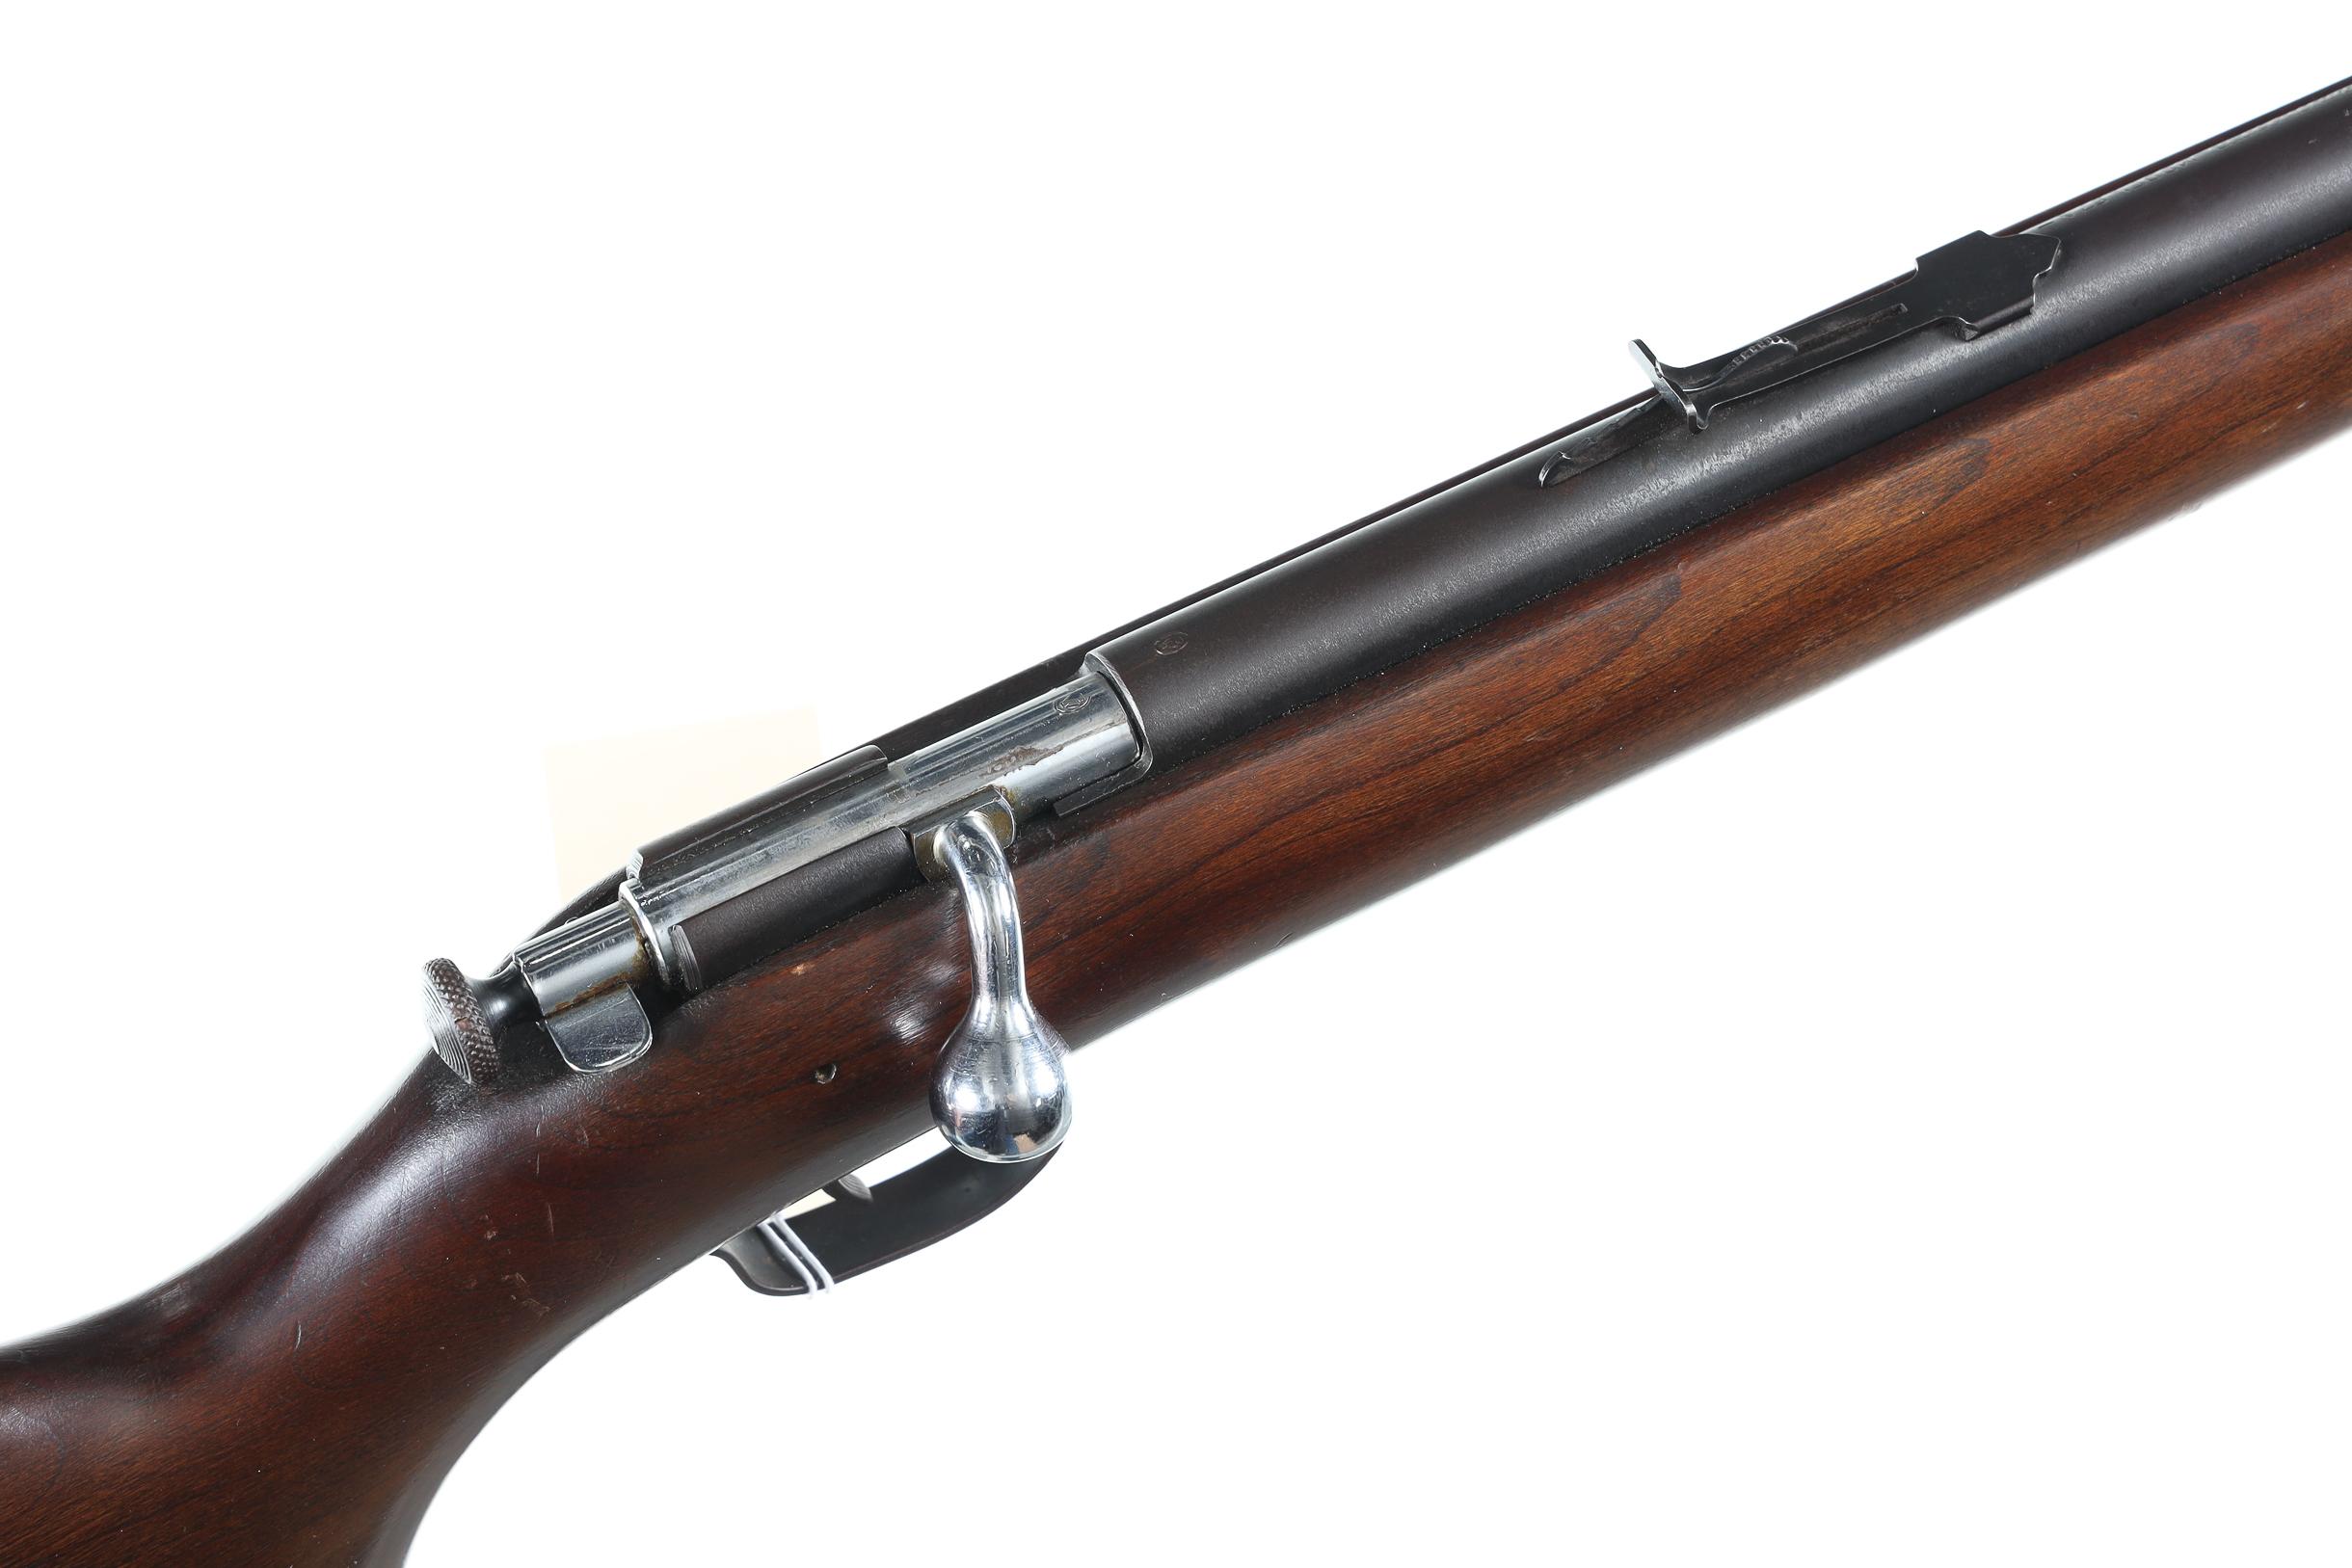 Winchester 67A Bolt Rifle .22 sllr